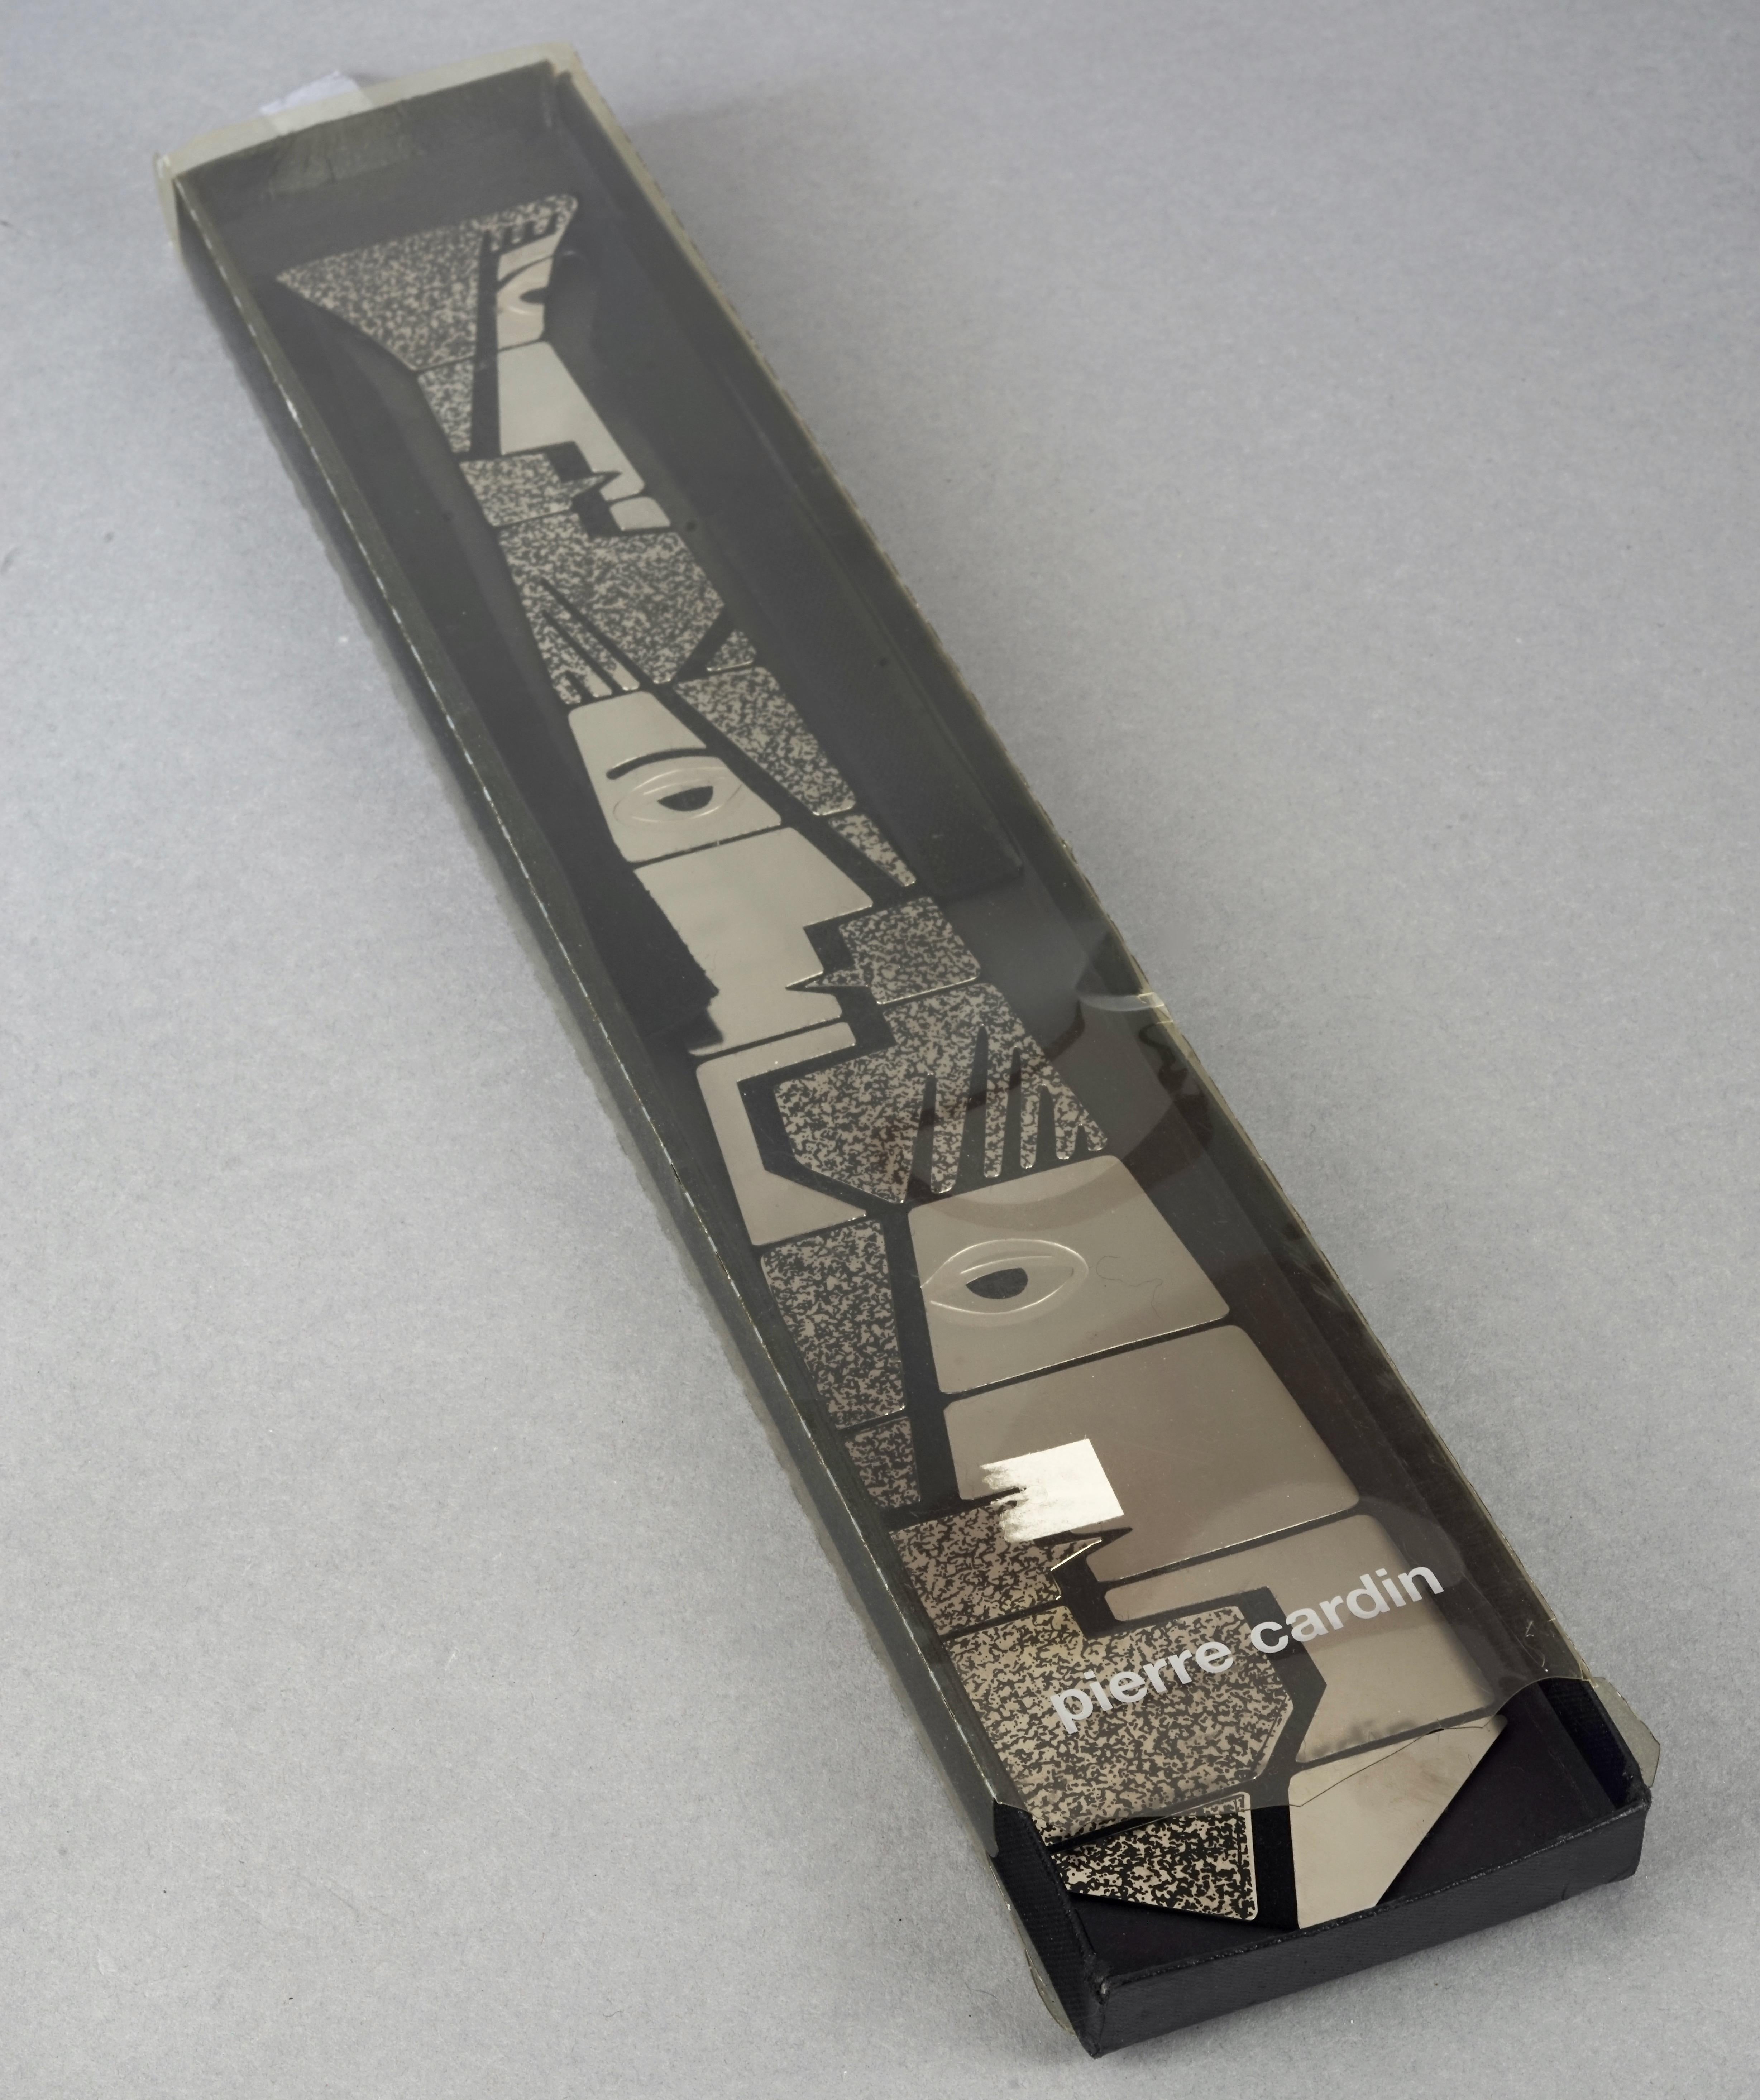 PIERRE CARDIN Cubism Metal Articulated Space Age Futuristic Necktie Necklace 1